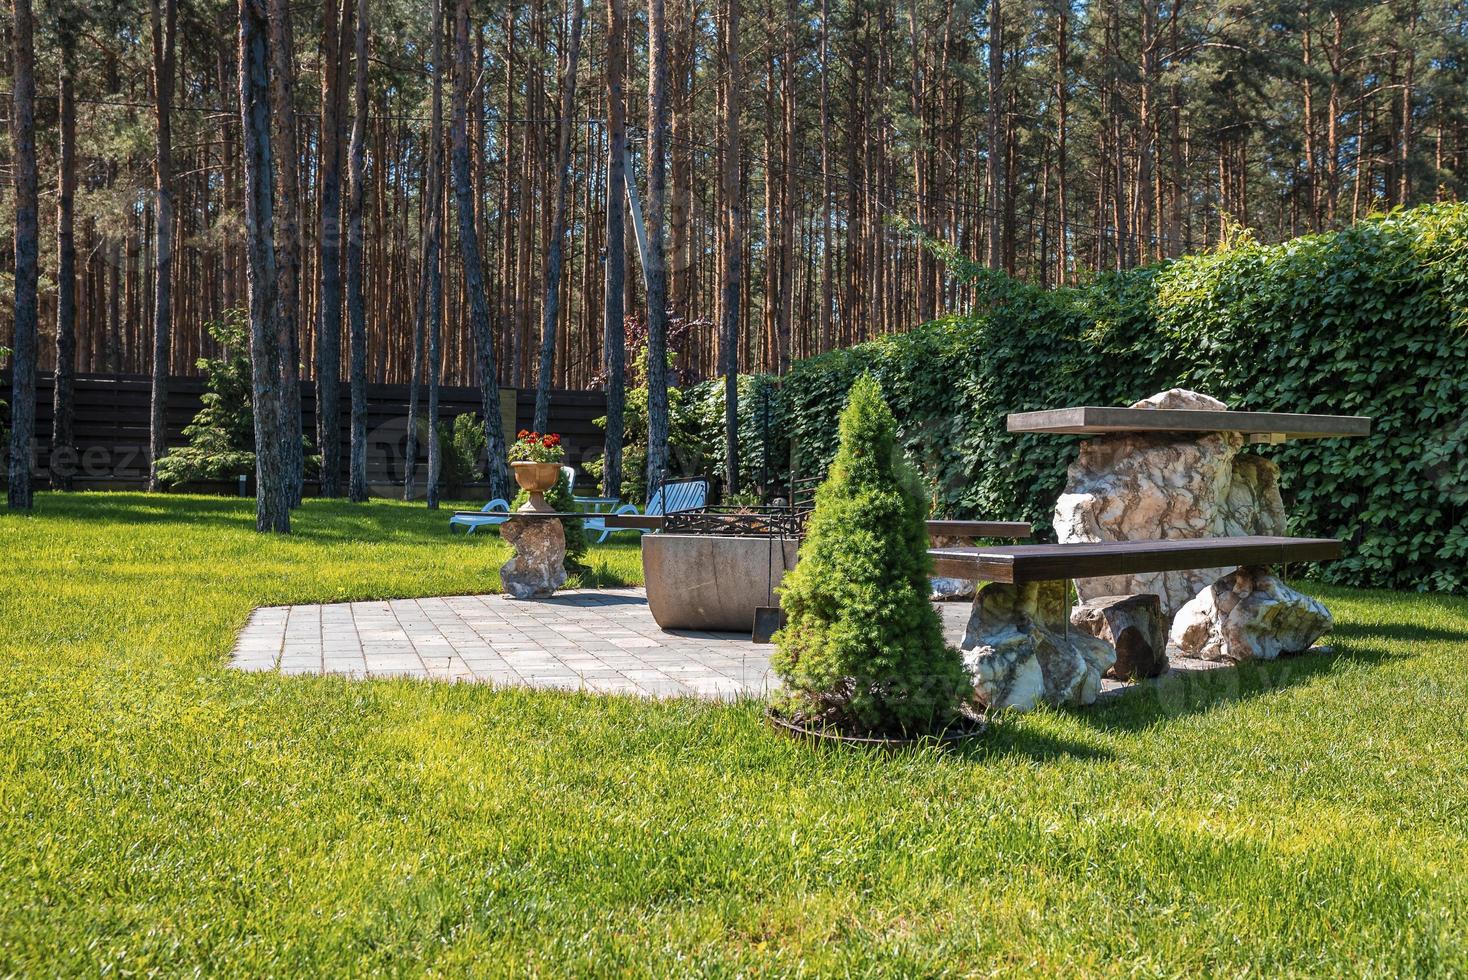 Bügeleisen Feuerstelle mit Bänken auf Steinpflaster im Garten Hinterhof foto